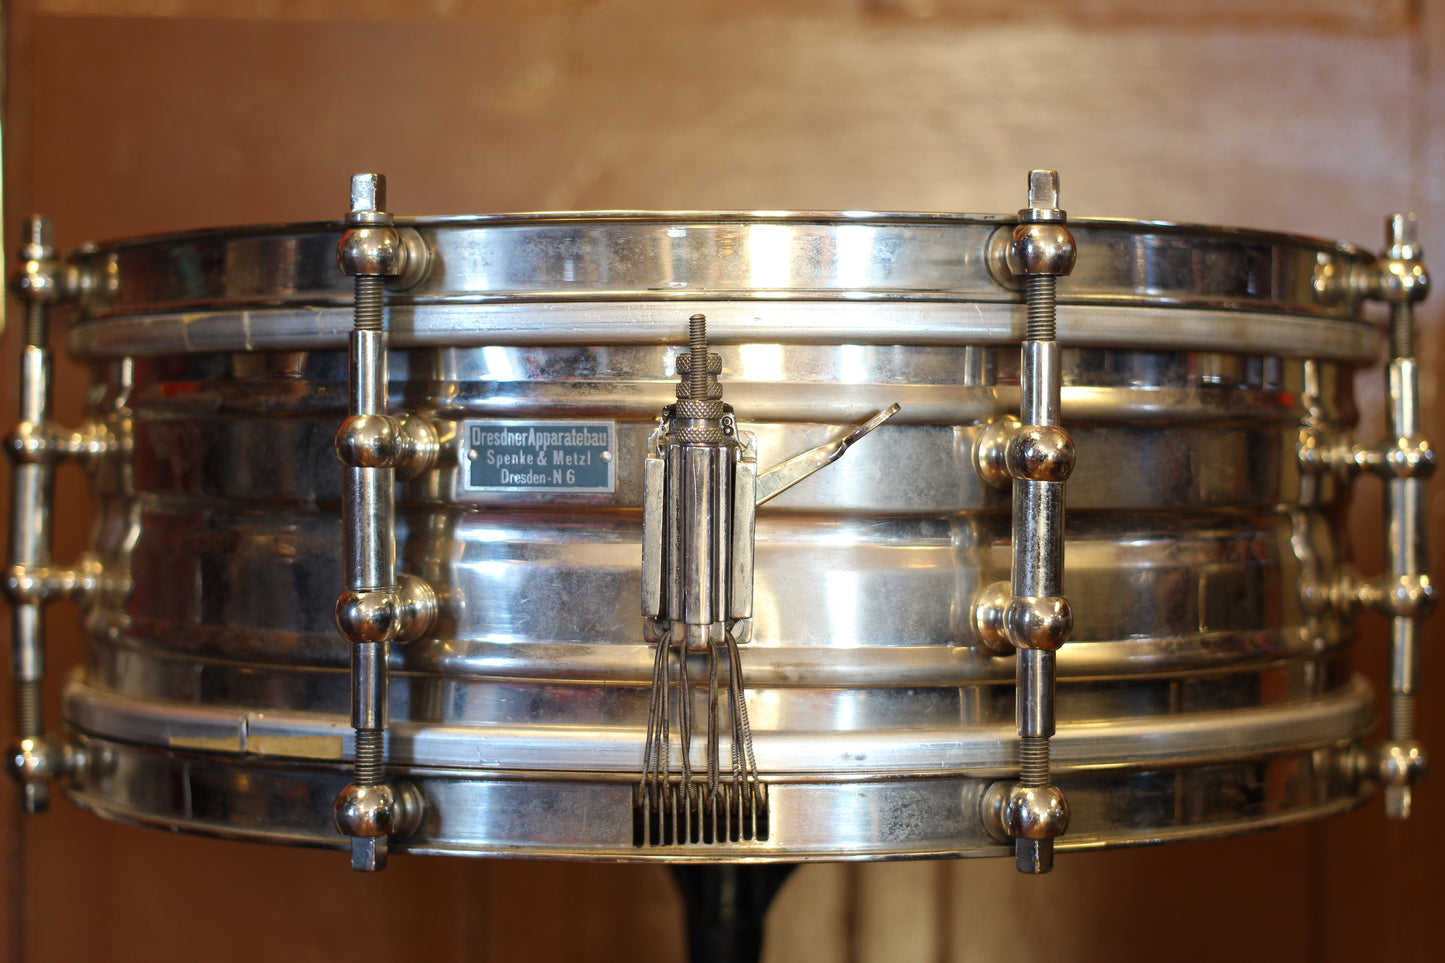 1930's Dresdner Apparatebau 'Spenke & Metzl' N6 Snare Drum 5"x14"